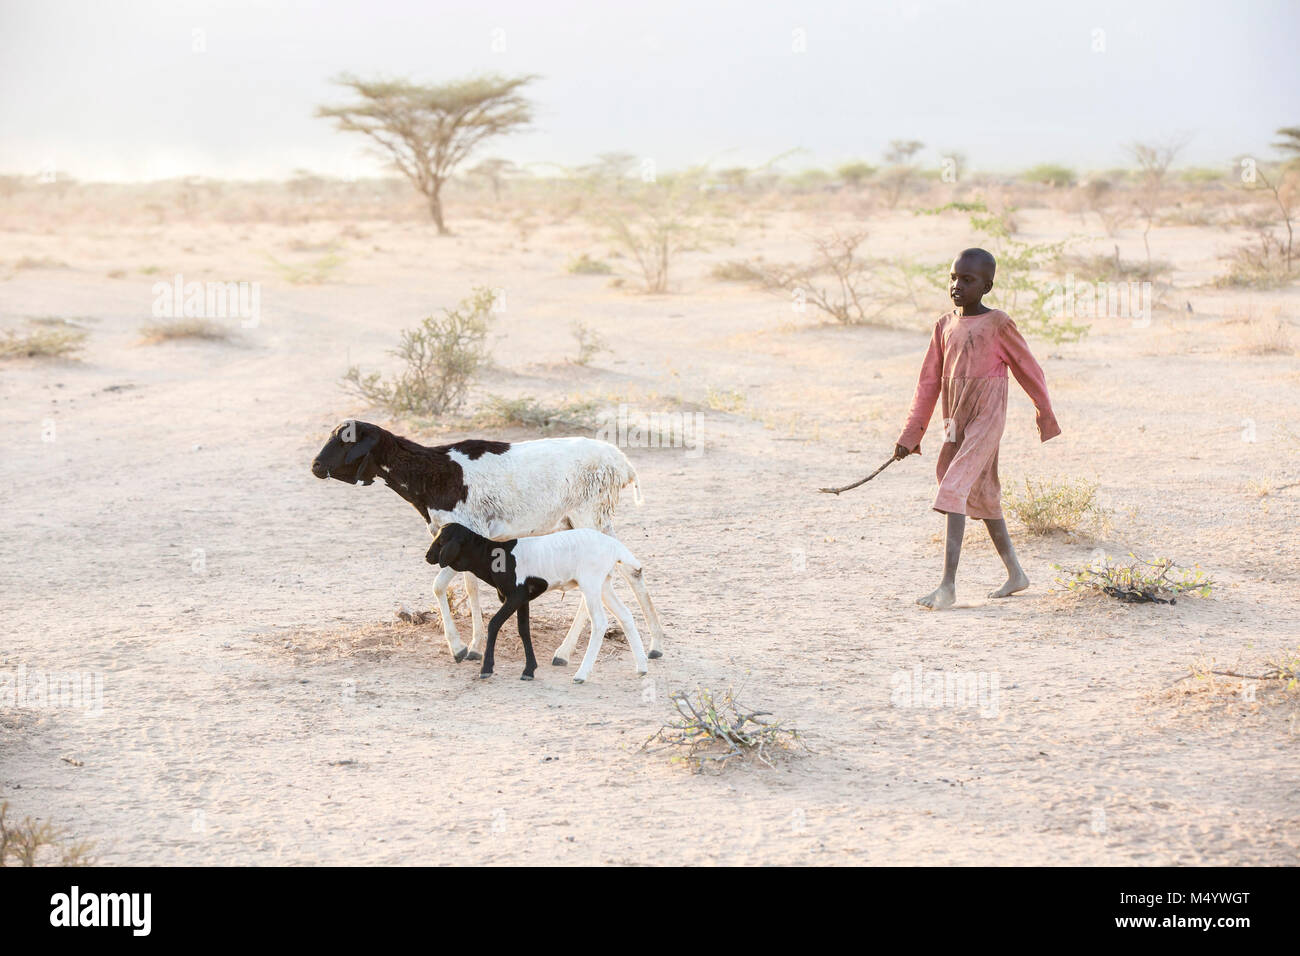 Une jeune fille dans les troupeaux caprins Samburu la zone touchée par la sécheresse de Samburu au nord du Kenya. Cette zone a été particulièrement touchée par le changement climatique au cours des cinq dernières années et ses communautés et la faune extrêmement mal à la suite. Banque D'Images